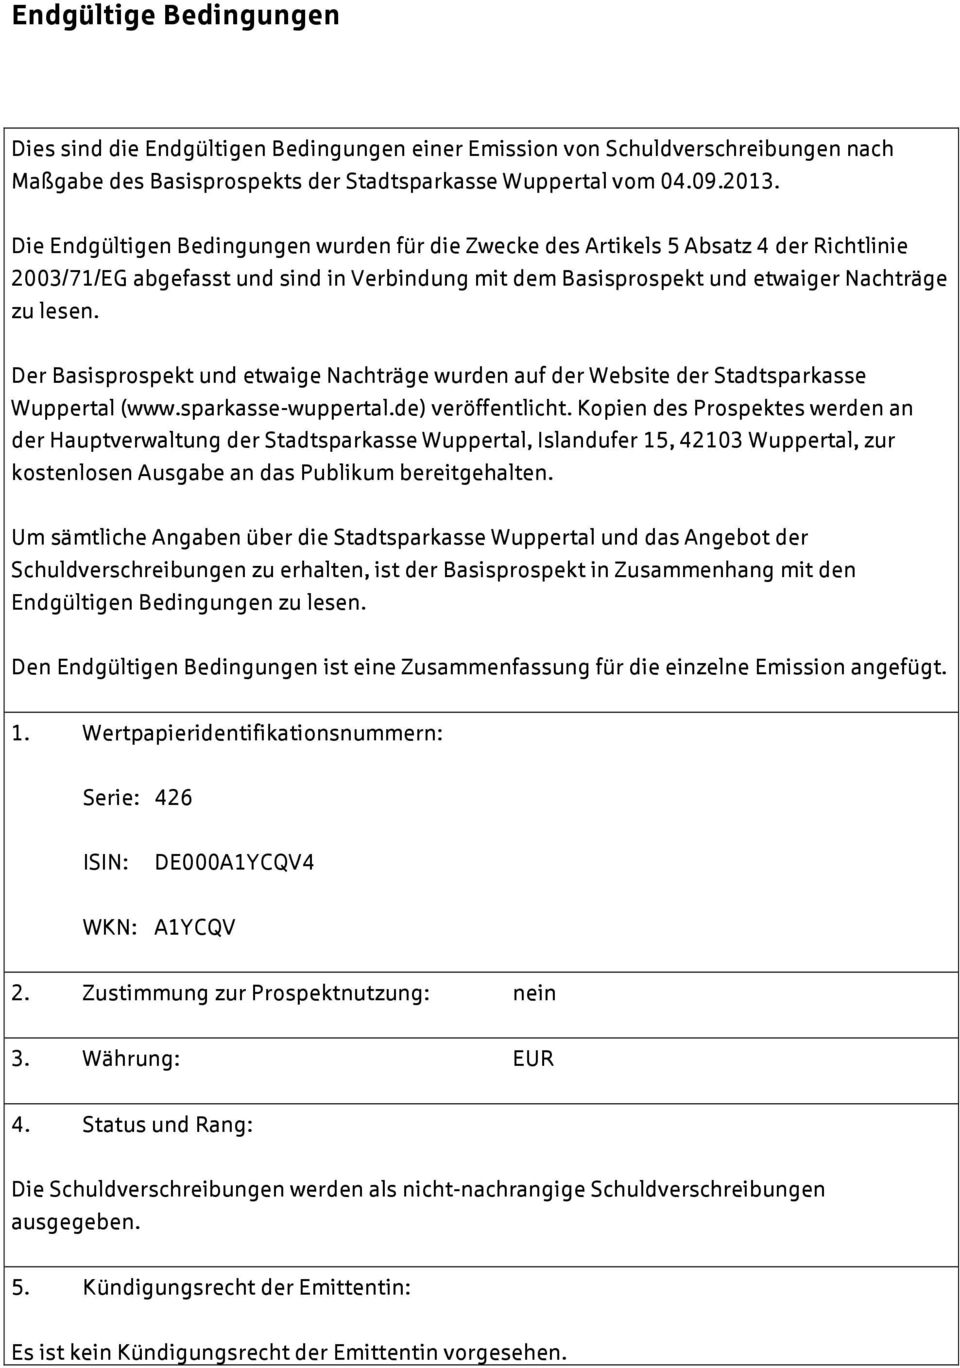 Der Basisprospekt und etwaige Nachträge wurden auf der Website der Stadtsparkasse Wuppertal (www.sparkasse-wuppertal.de) veröffentlicht.